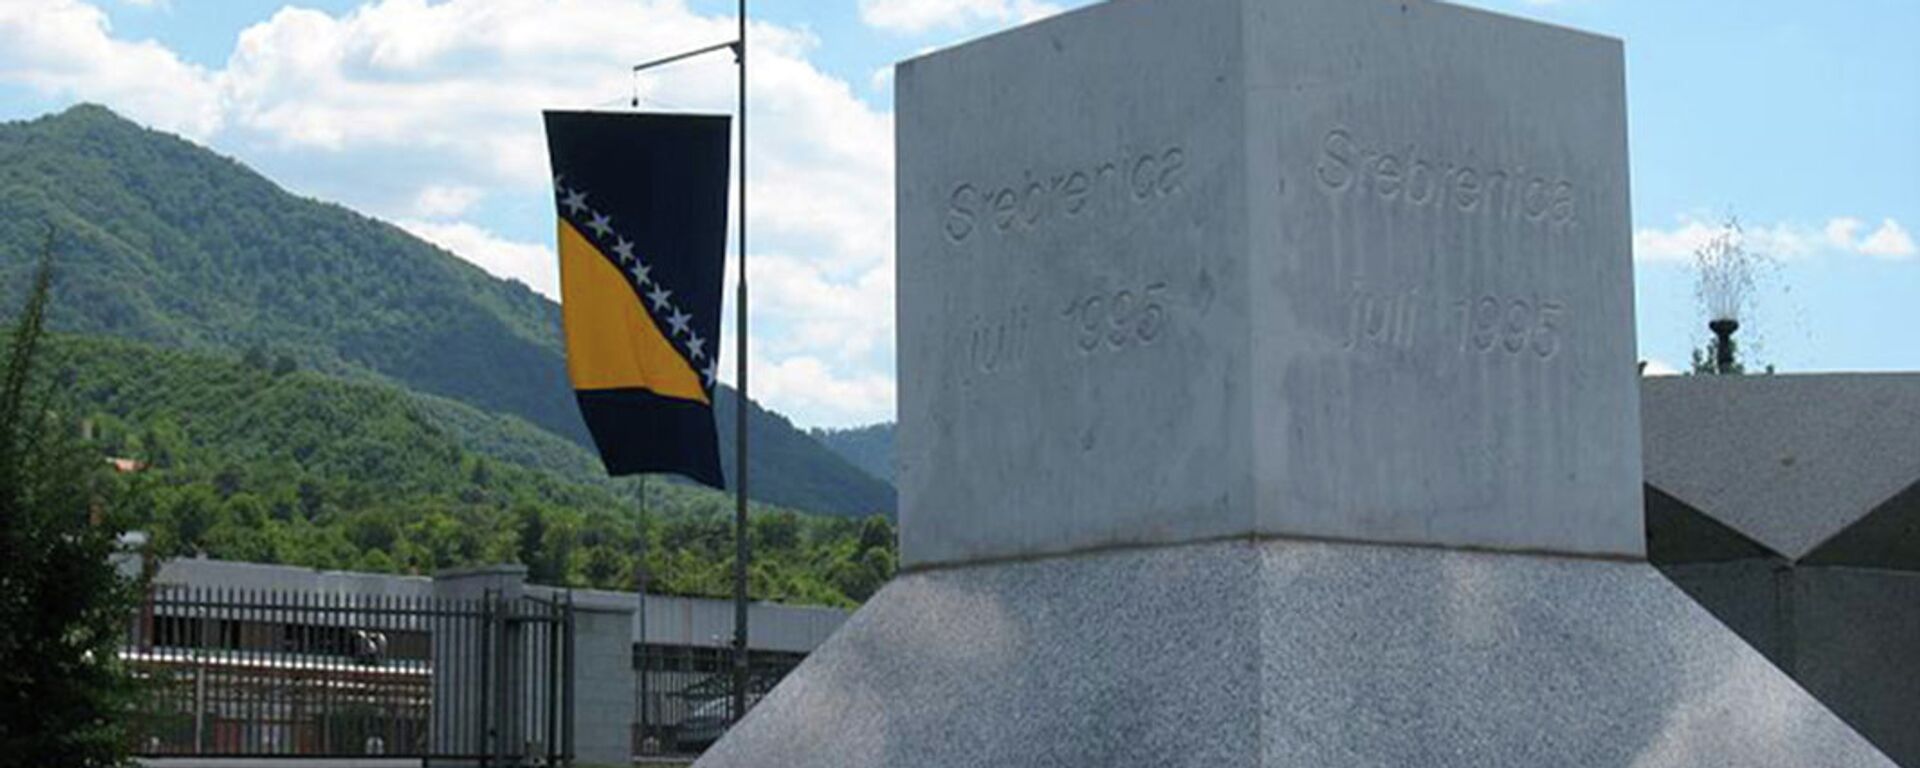 Сребреница - Sputnik Србија, 1920, 15.06.2021